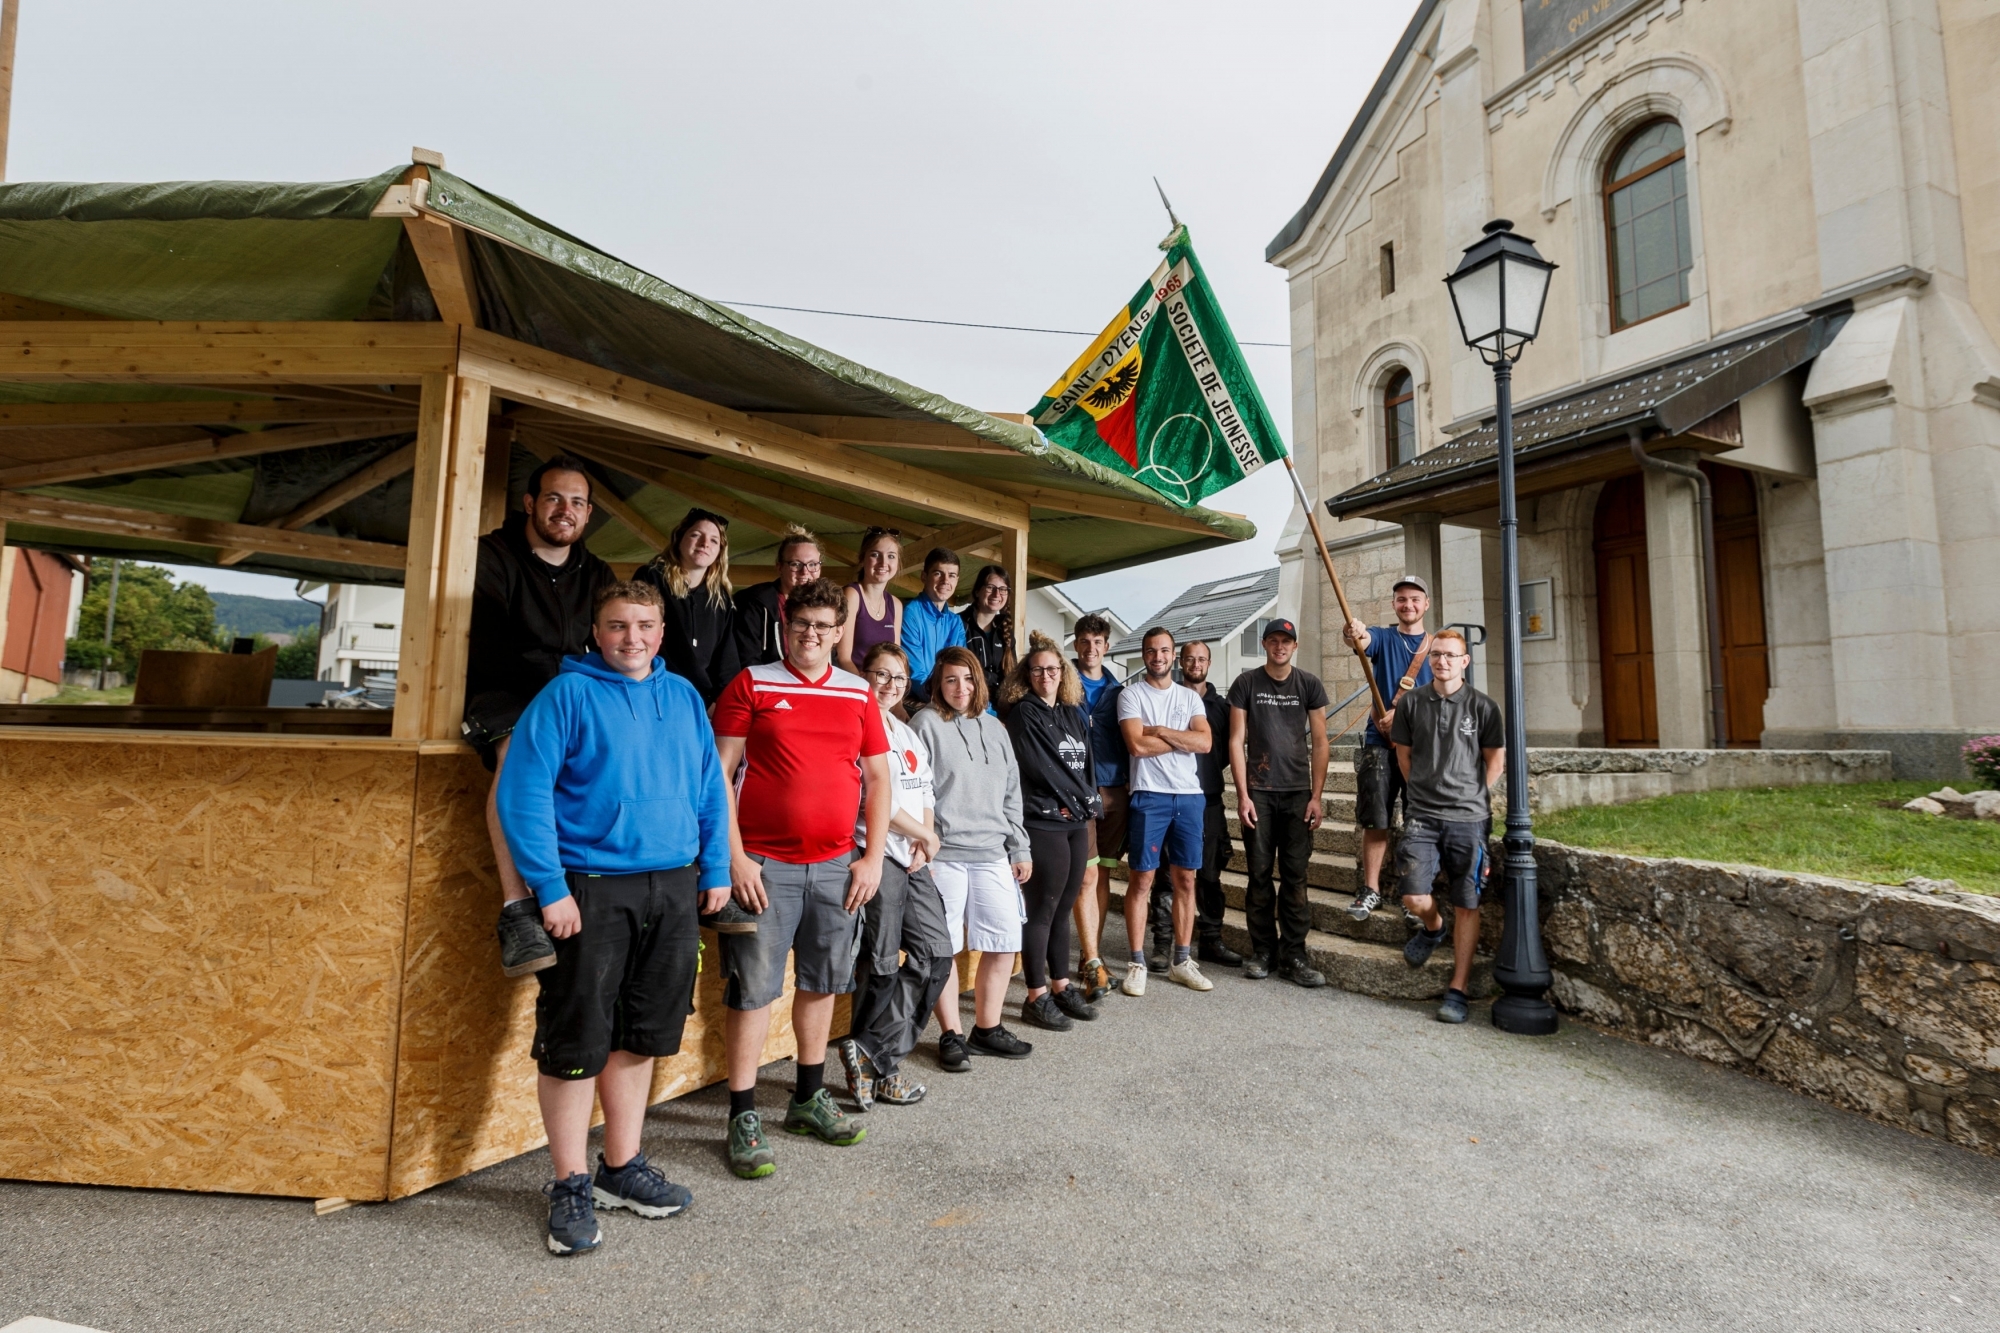 La Jeunesse de Saint-Oyens est en train d'aménager une place de fête pour célébrer ses 150 ans. Elle a construit pour l'occasion, notamment, une tonnelle.